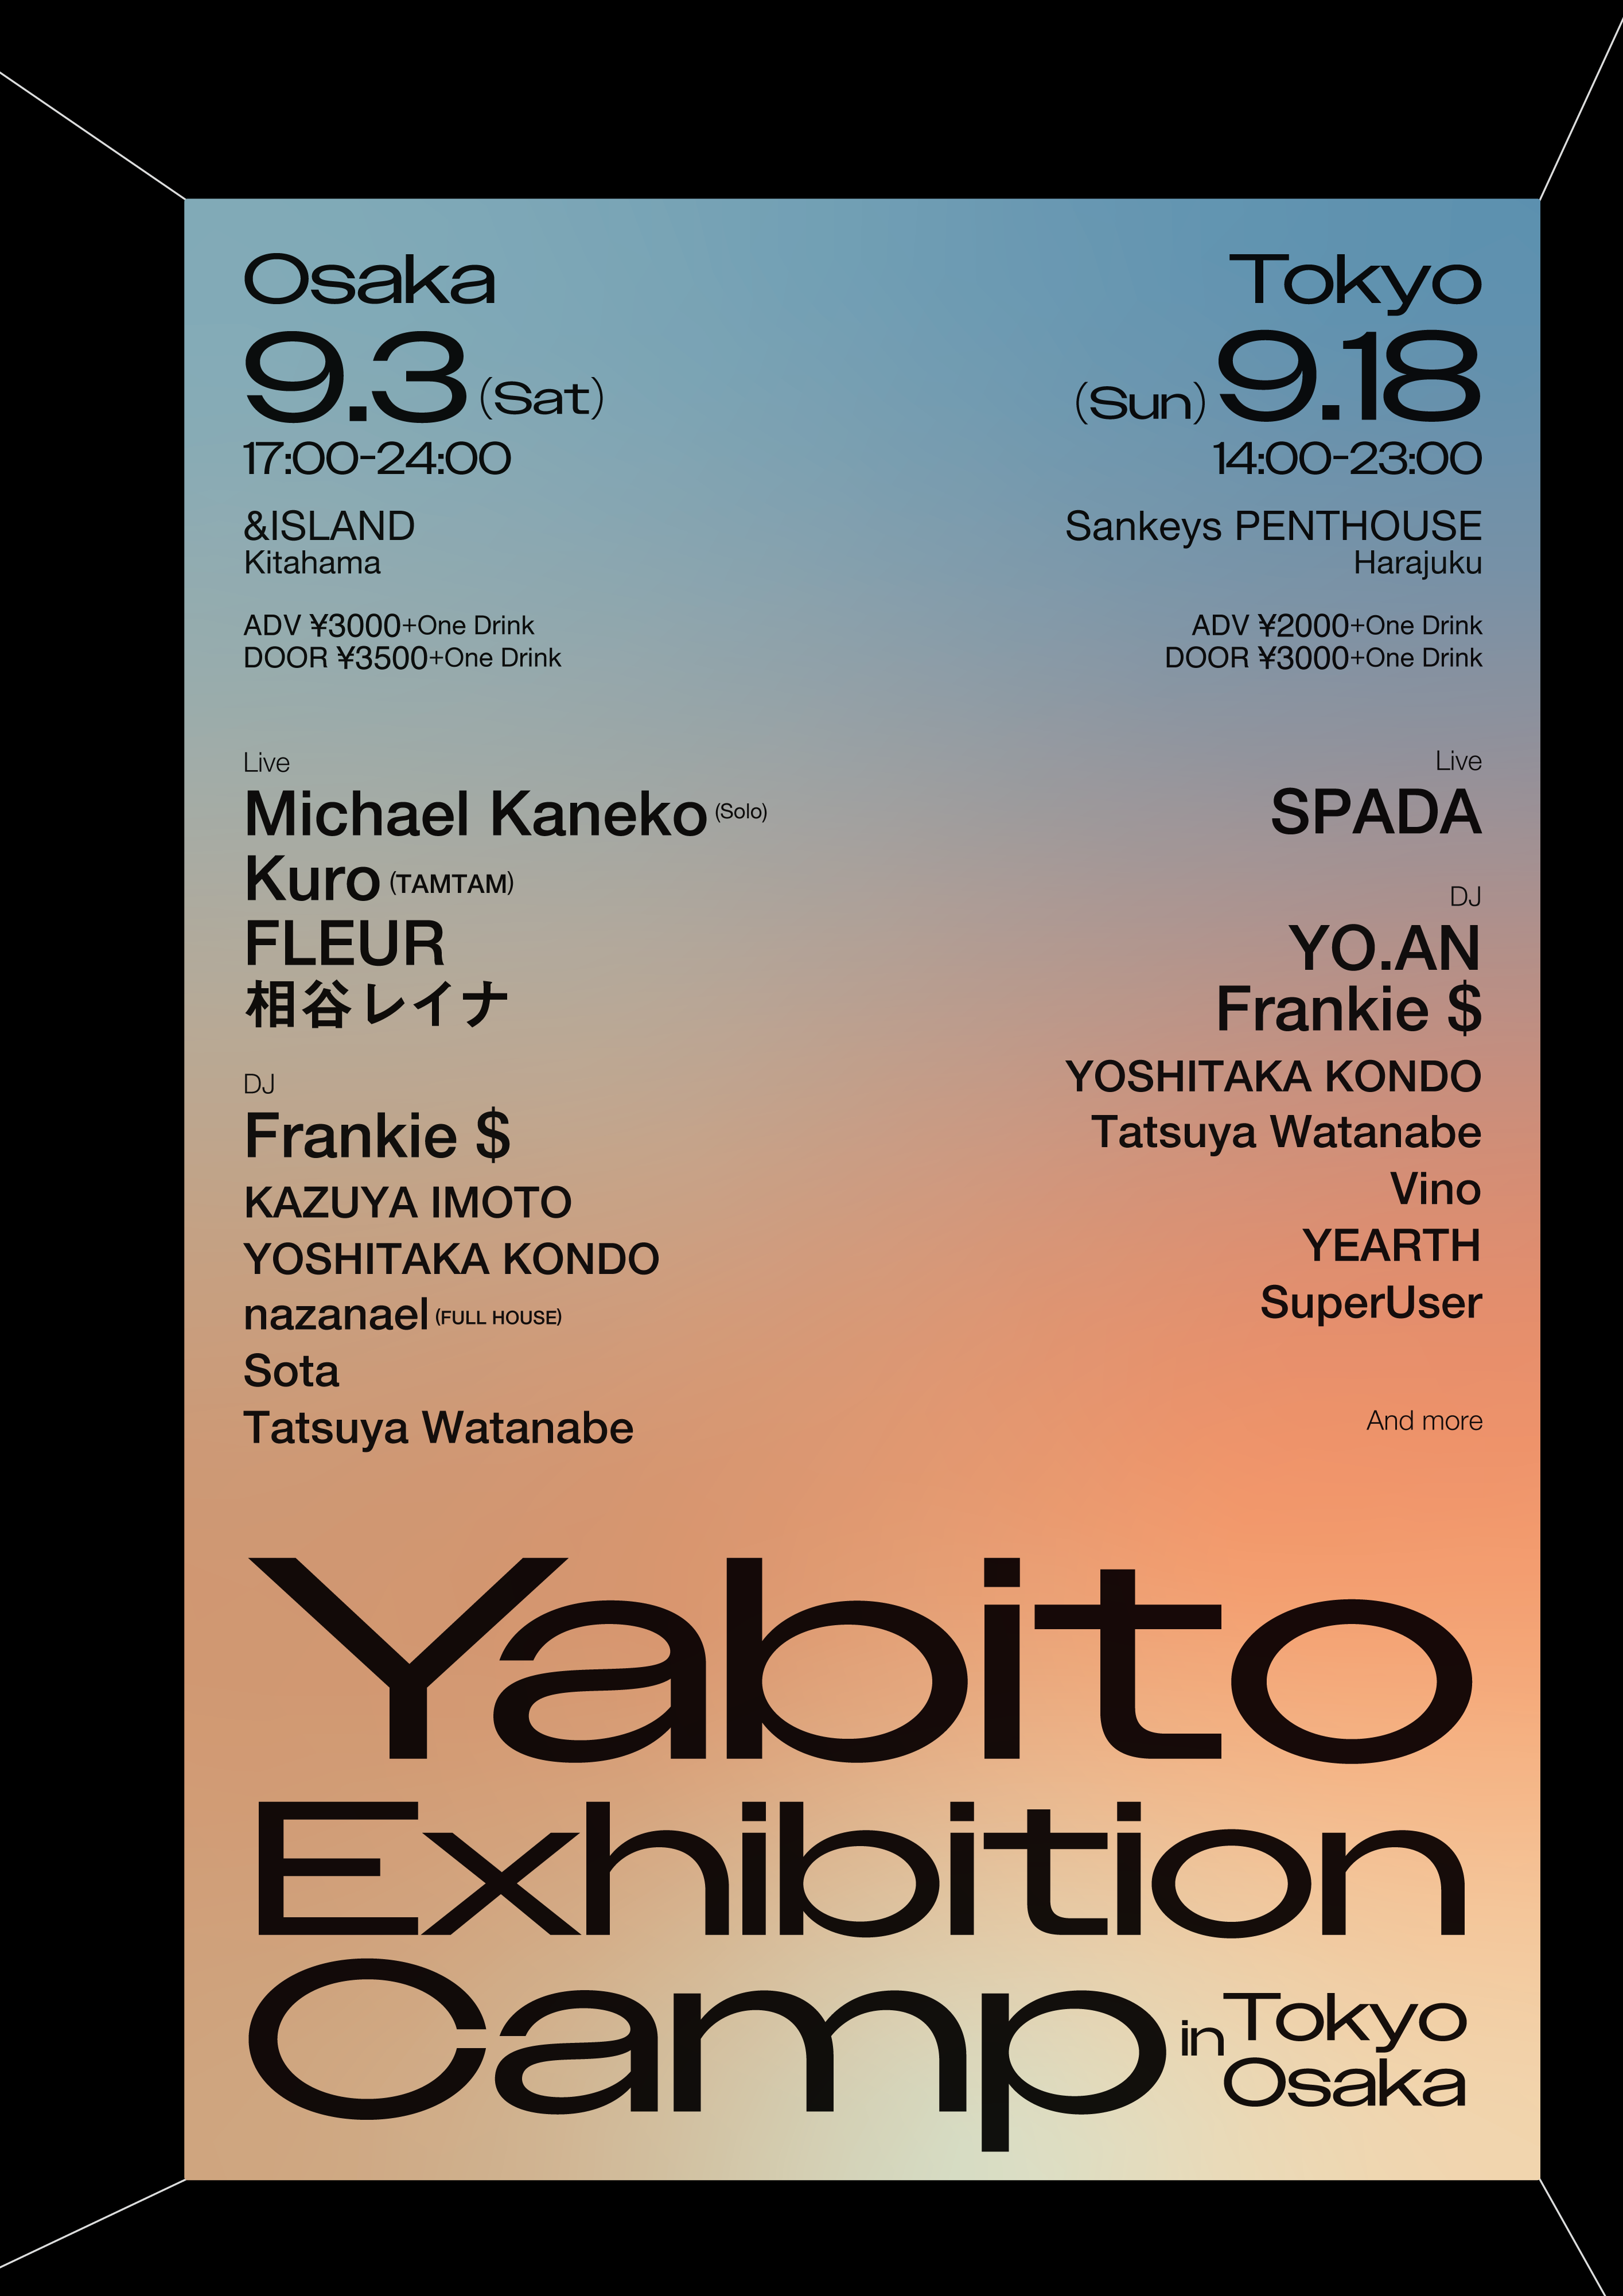 Yabito Exhibition Camp in Tokyo